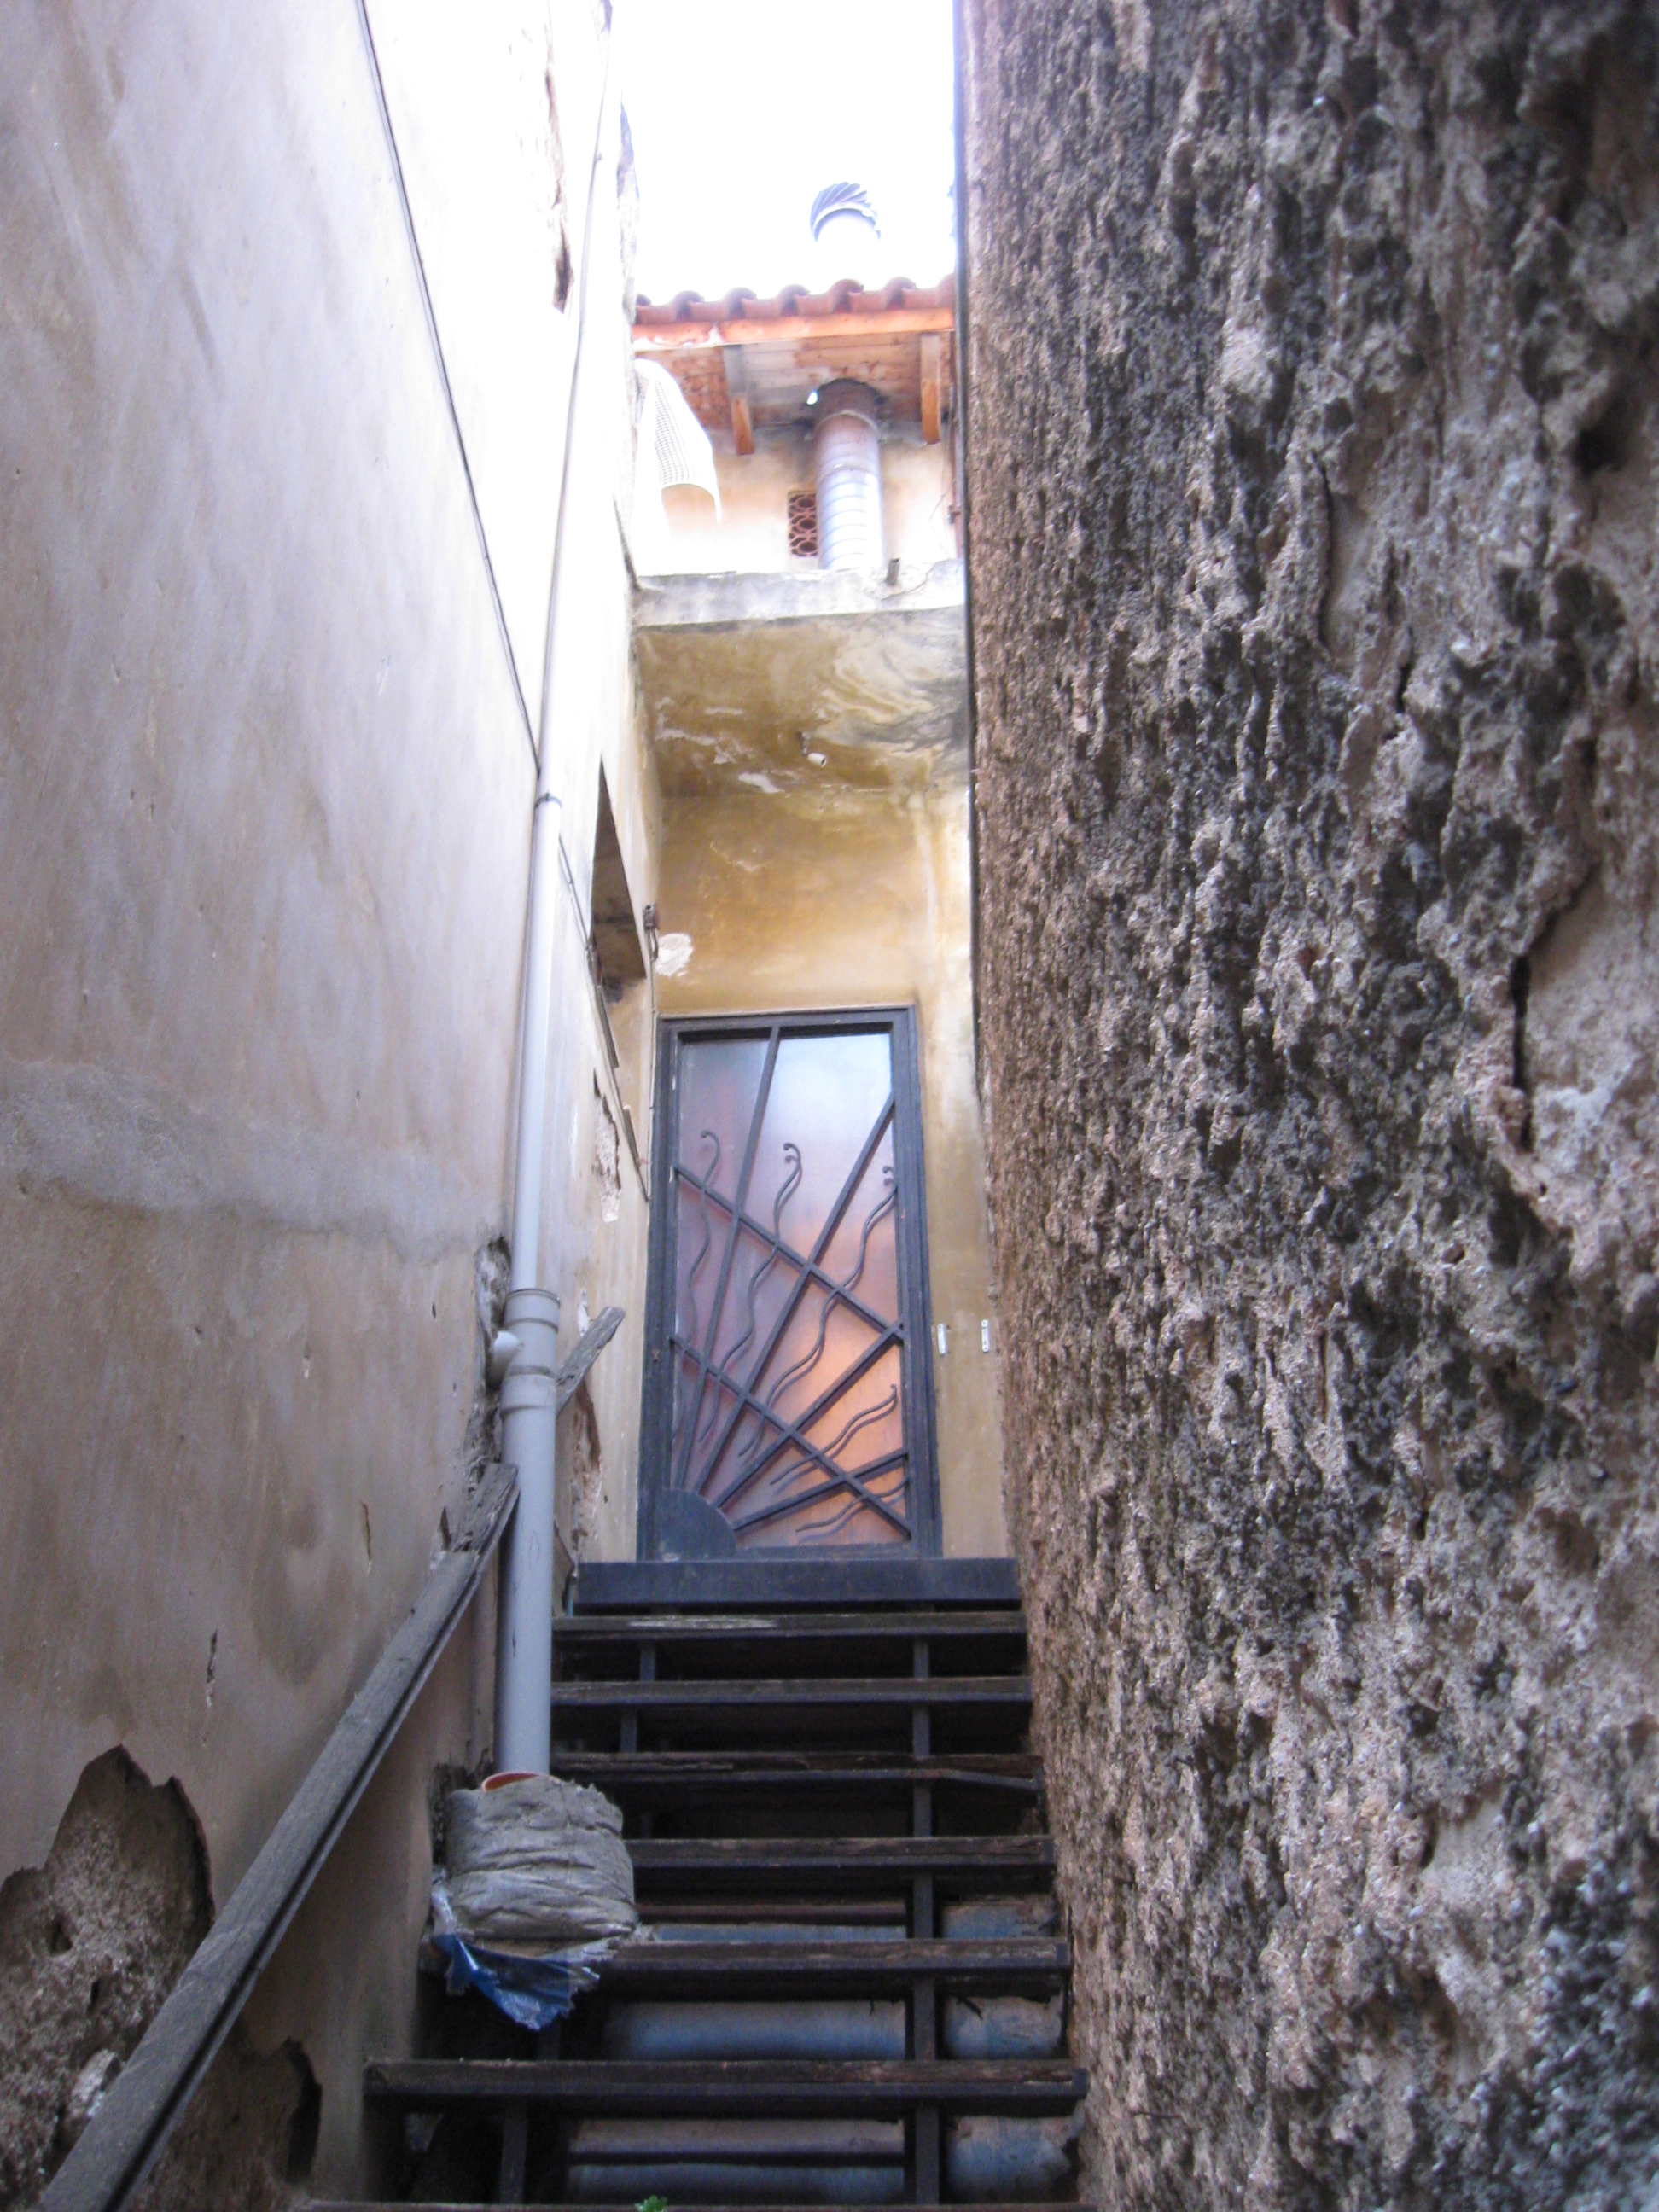 Entrance door to the first floor